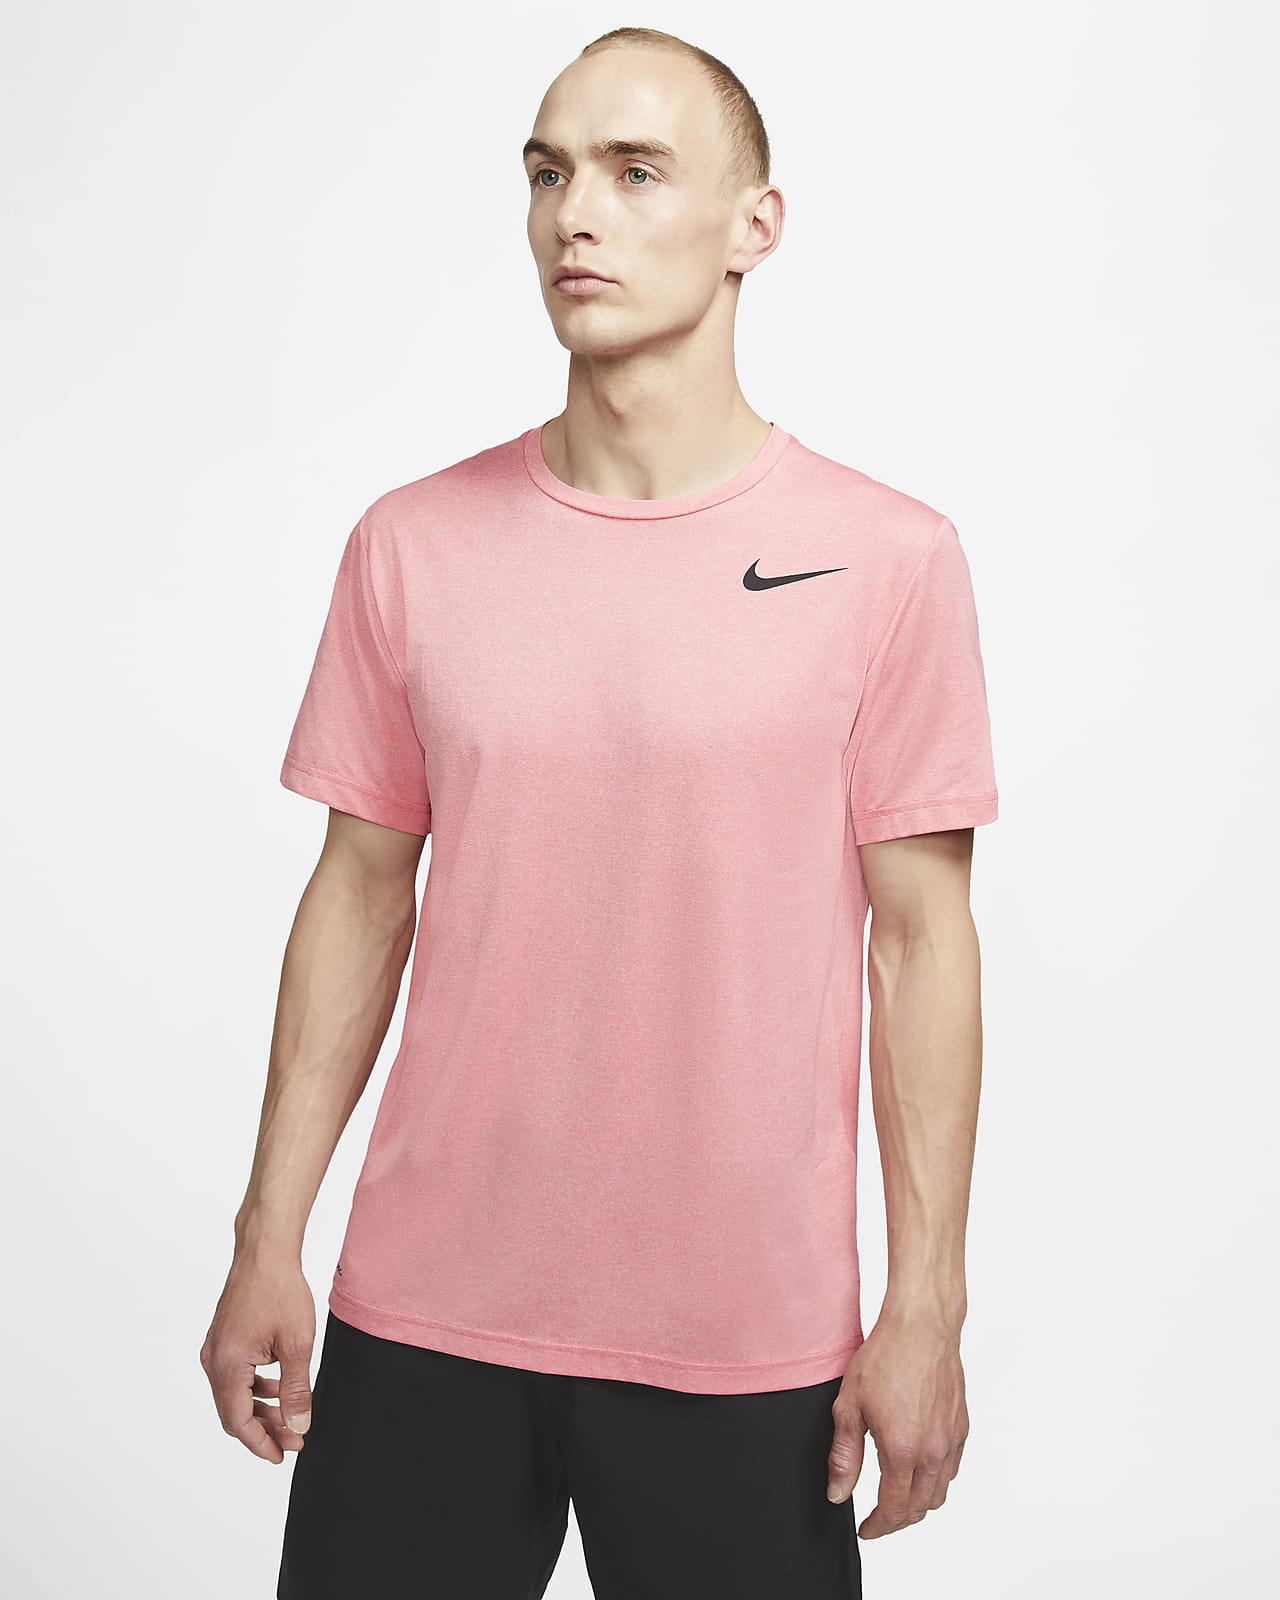 Nike Pro Men's Short-Sleeve Top. Nike PH